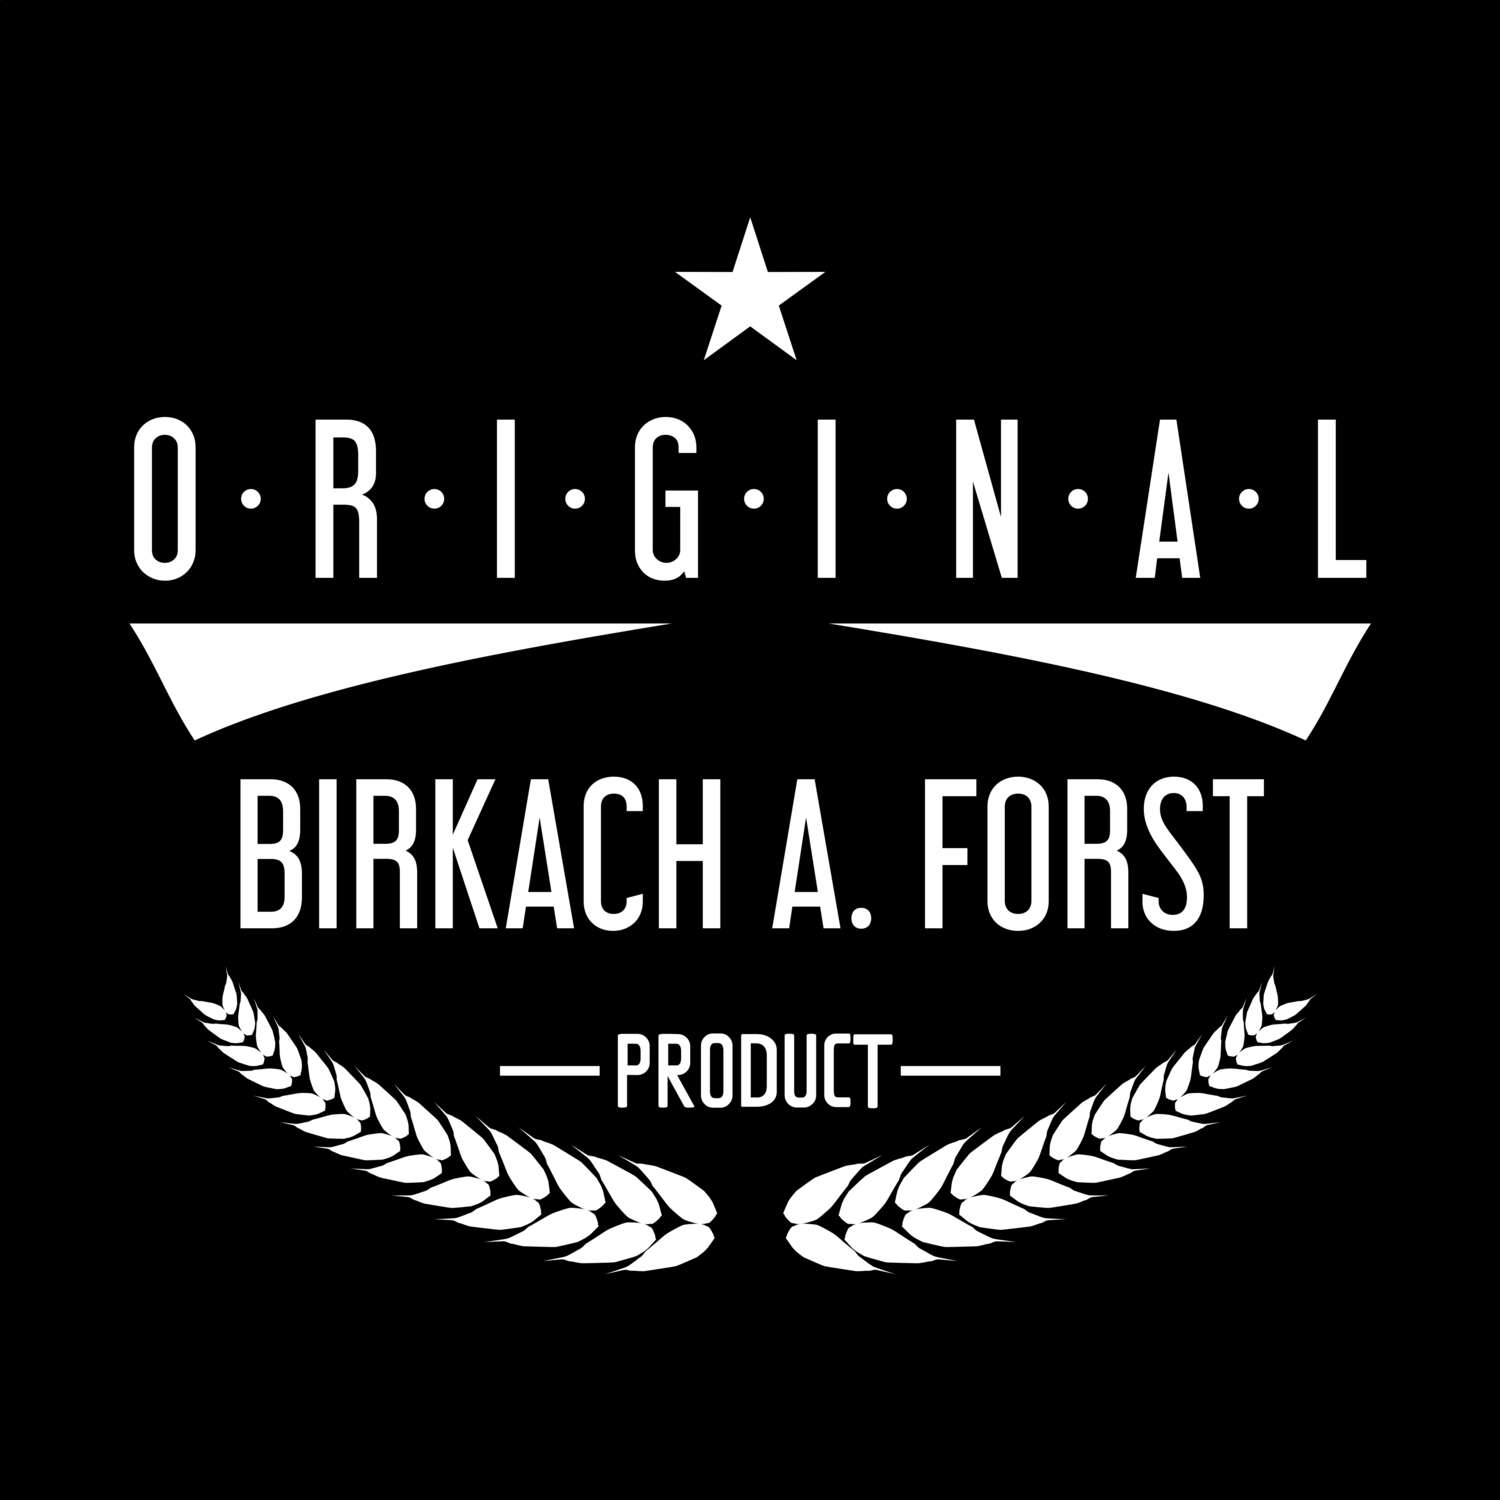 Birkach a. Forst T-Shirt »Original Product«